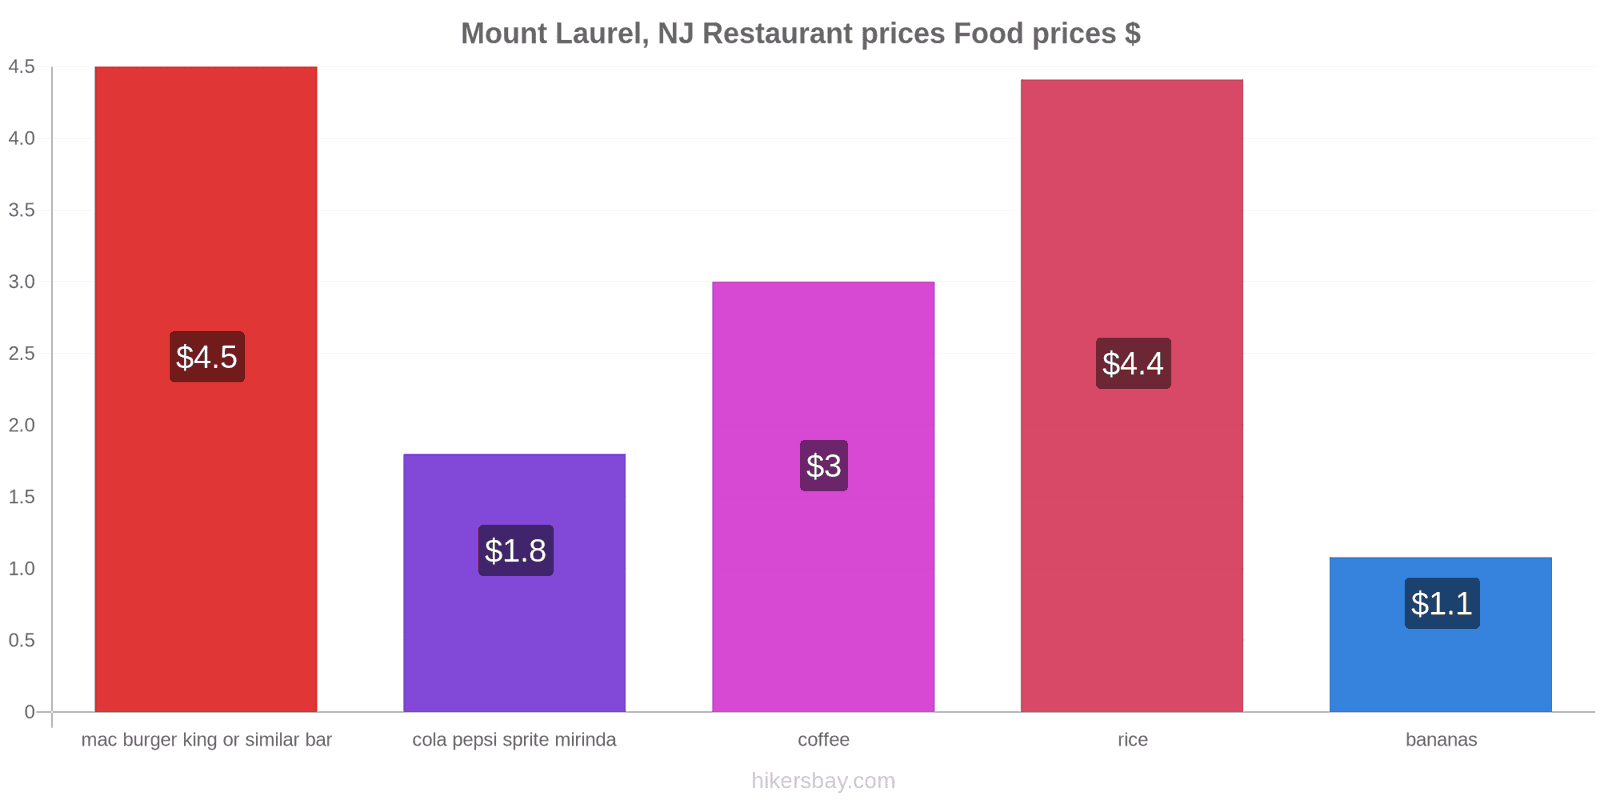 Mount Laurel, NJ price changes hikersbay.com